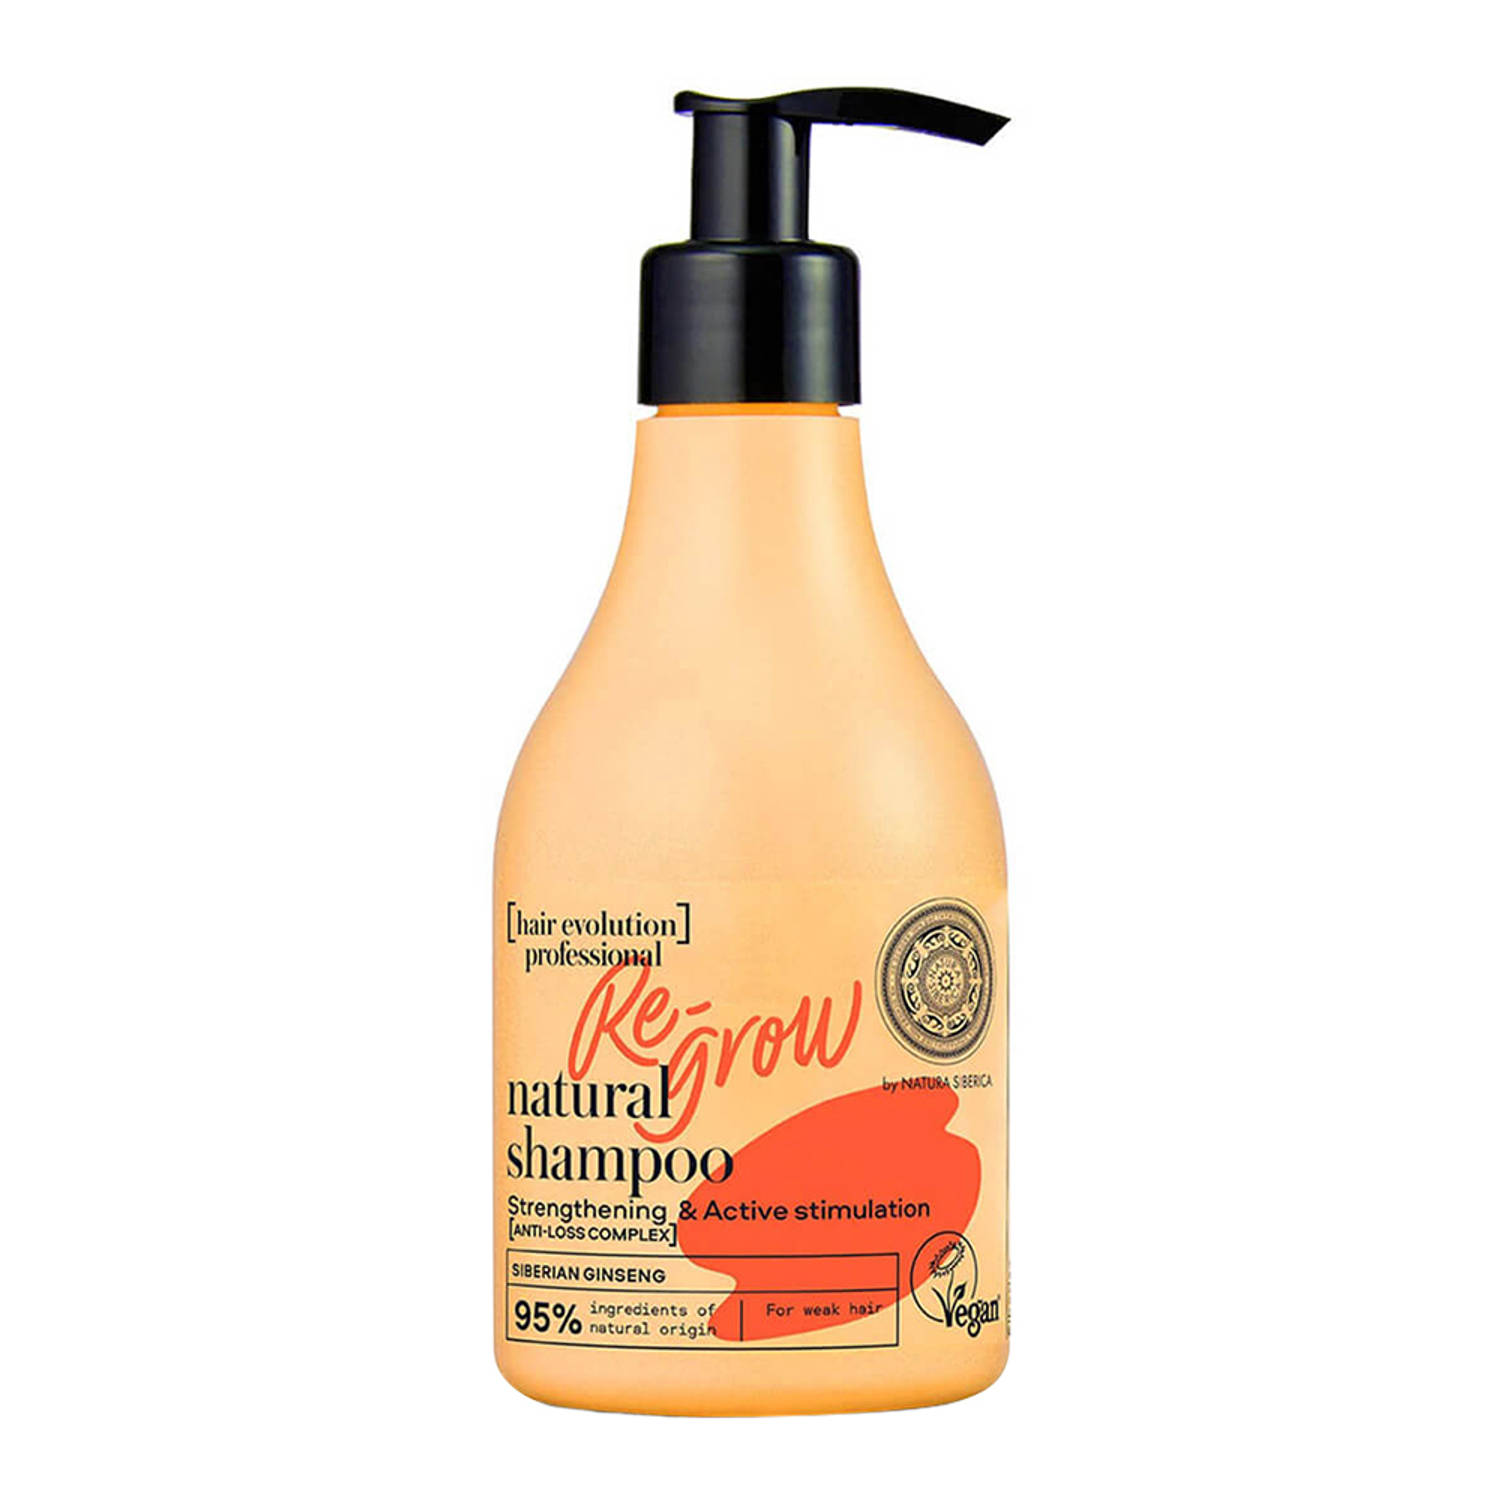 Hair Evolution Re-Grow Natural Shampoo natuurlijke veganistische shampoo voor verzwakt en vallend haar 245ml